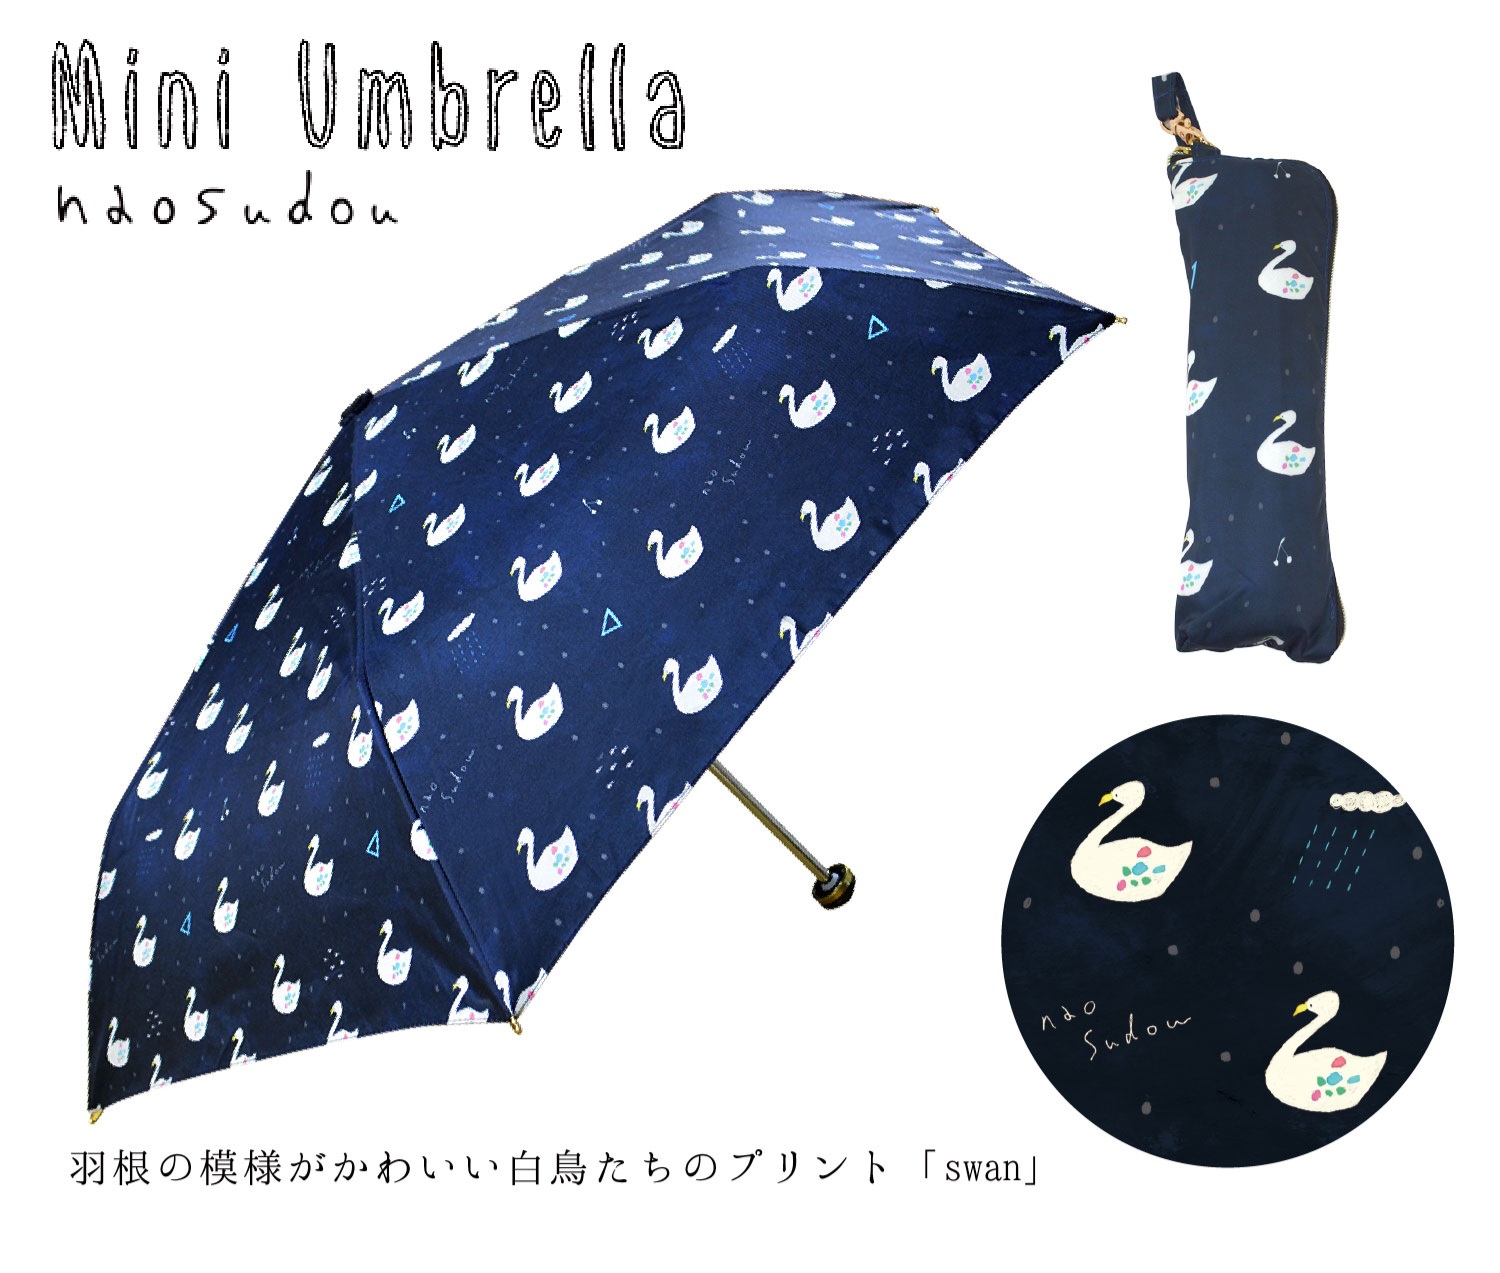 【ご紹介します！繊細なアートワークブランド！】naosudou折りたたみ傘 swan ネイビー